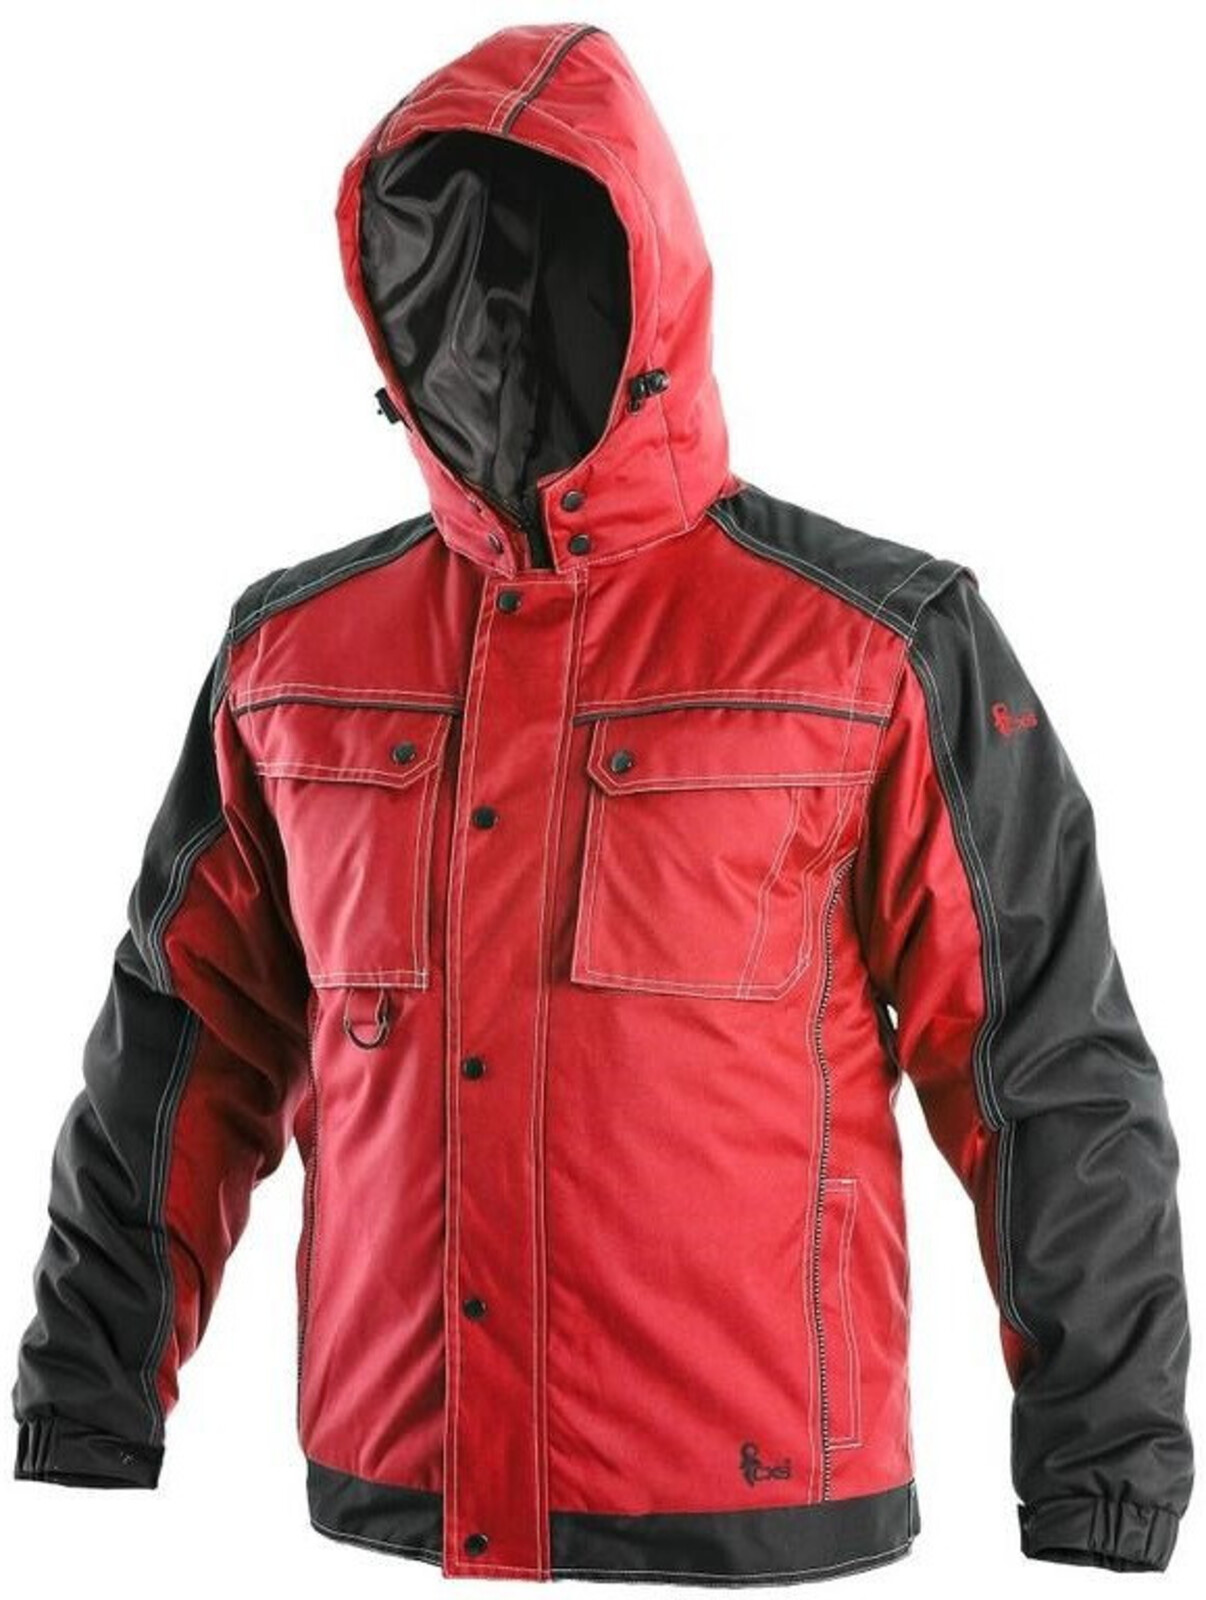 Pánska zimná bunda CXS Irvine 2v1 - veľkosť: M, farba: červená/čierna